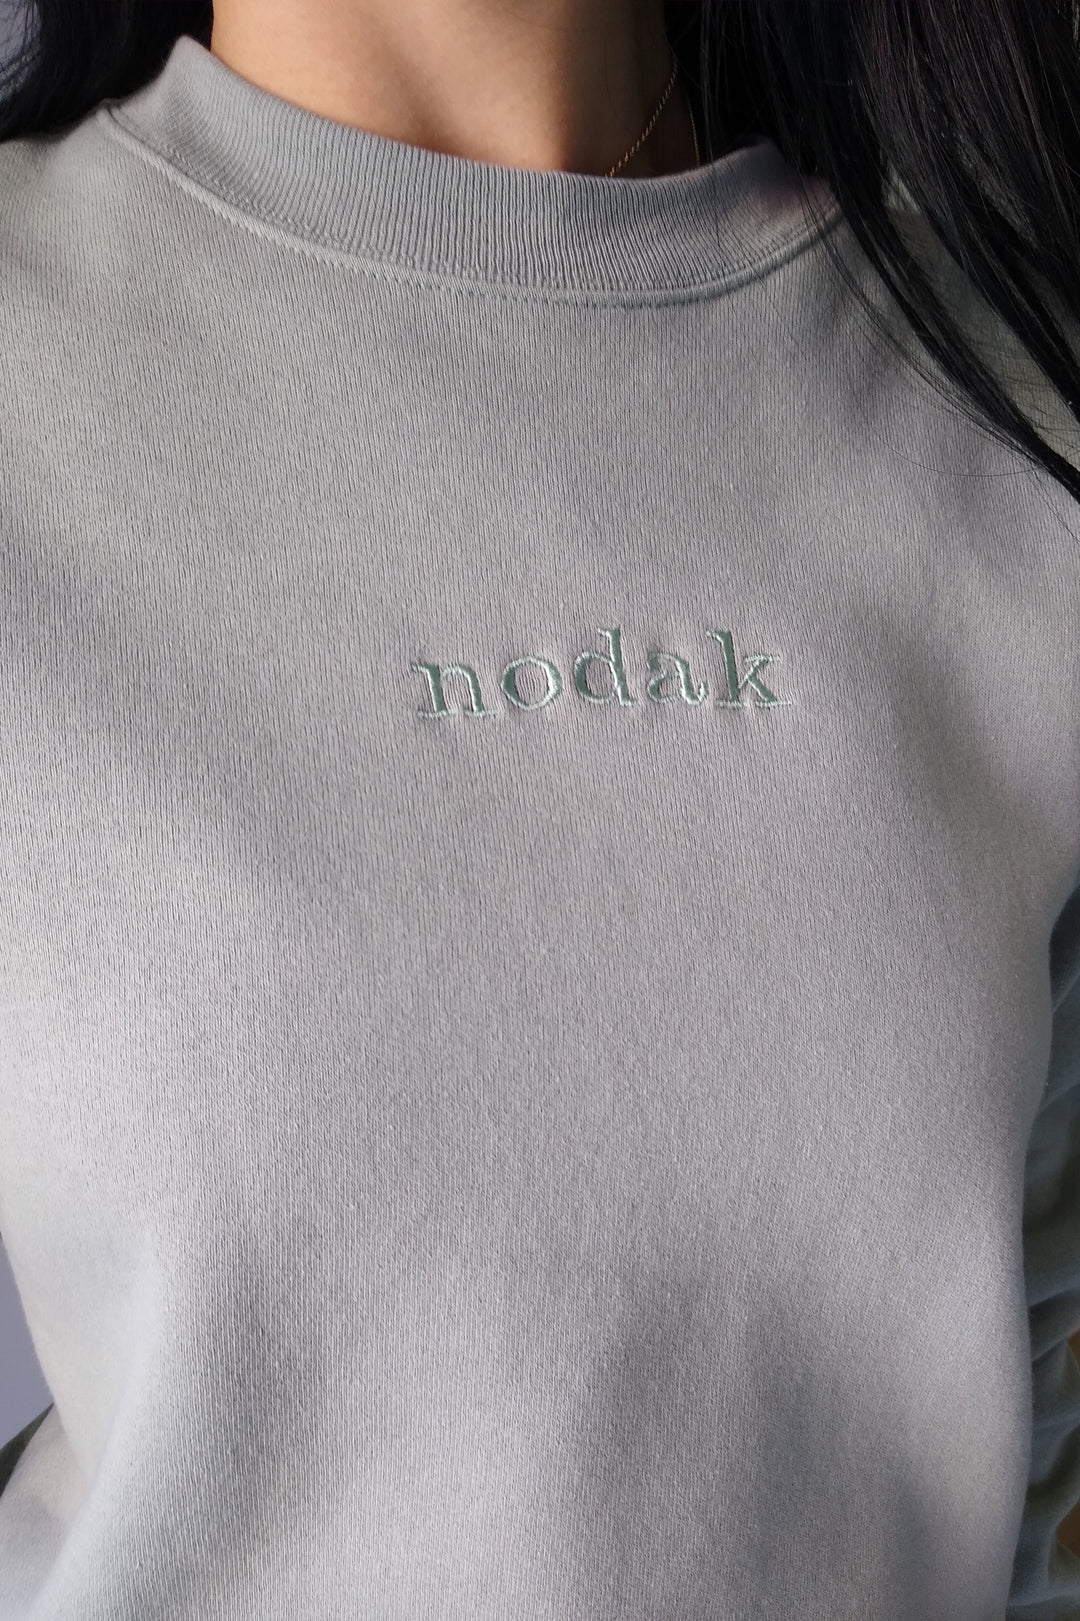 Nodak Sage Green Embroidered Crewneck Sweatshirt